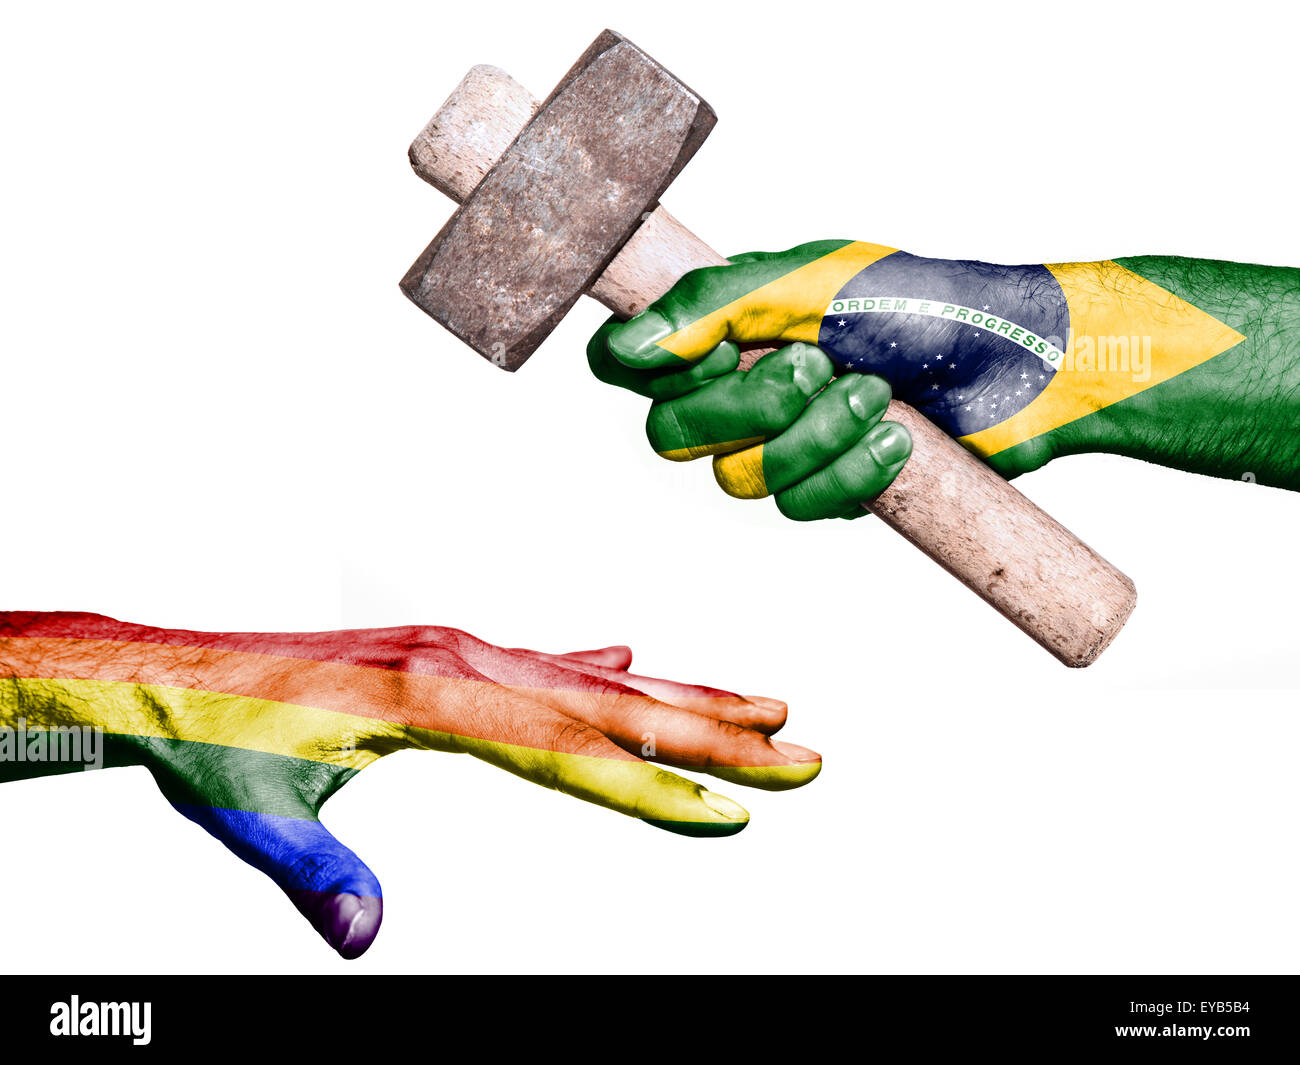 Drapeau du Brésil surimprimées sur une main tenant un marteau lourd frappe une part représentant la paix. Image conceptuelle pour politica Banque D'Images